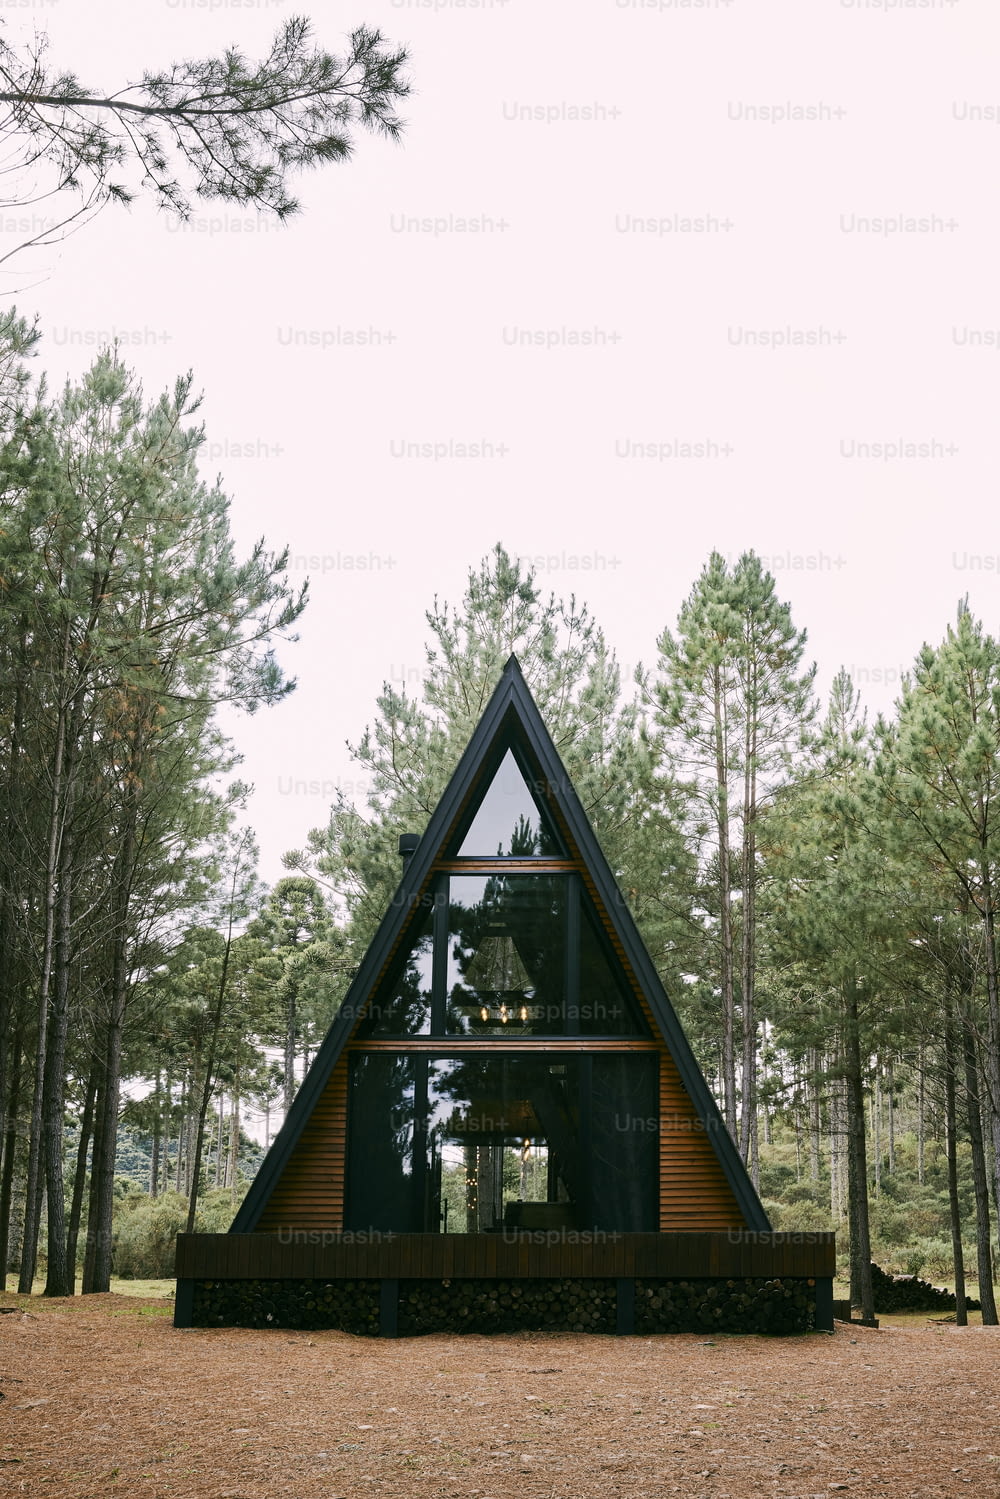 a - cabana de estrutura no meio de uma floresta